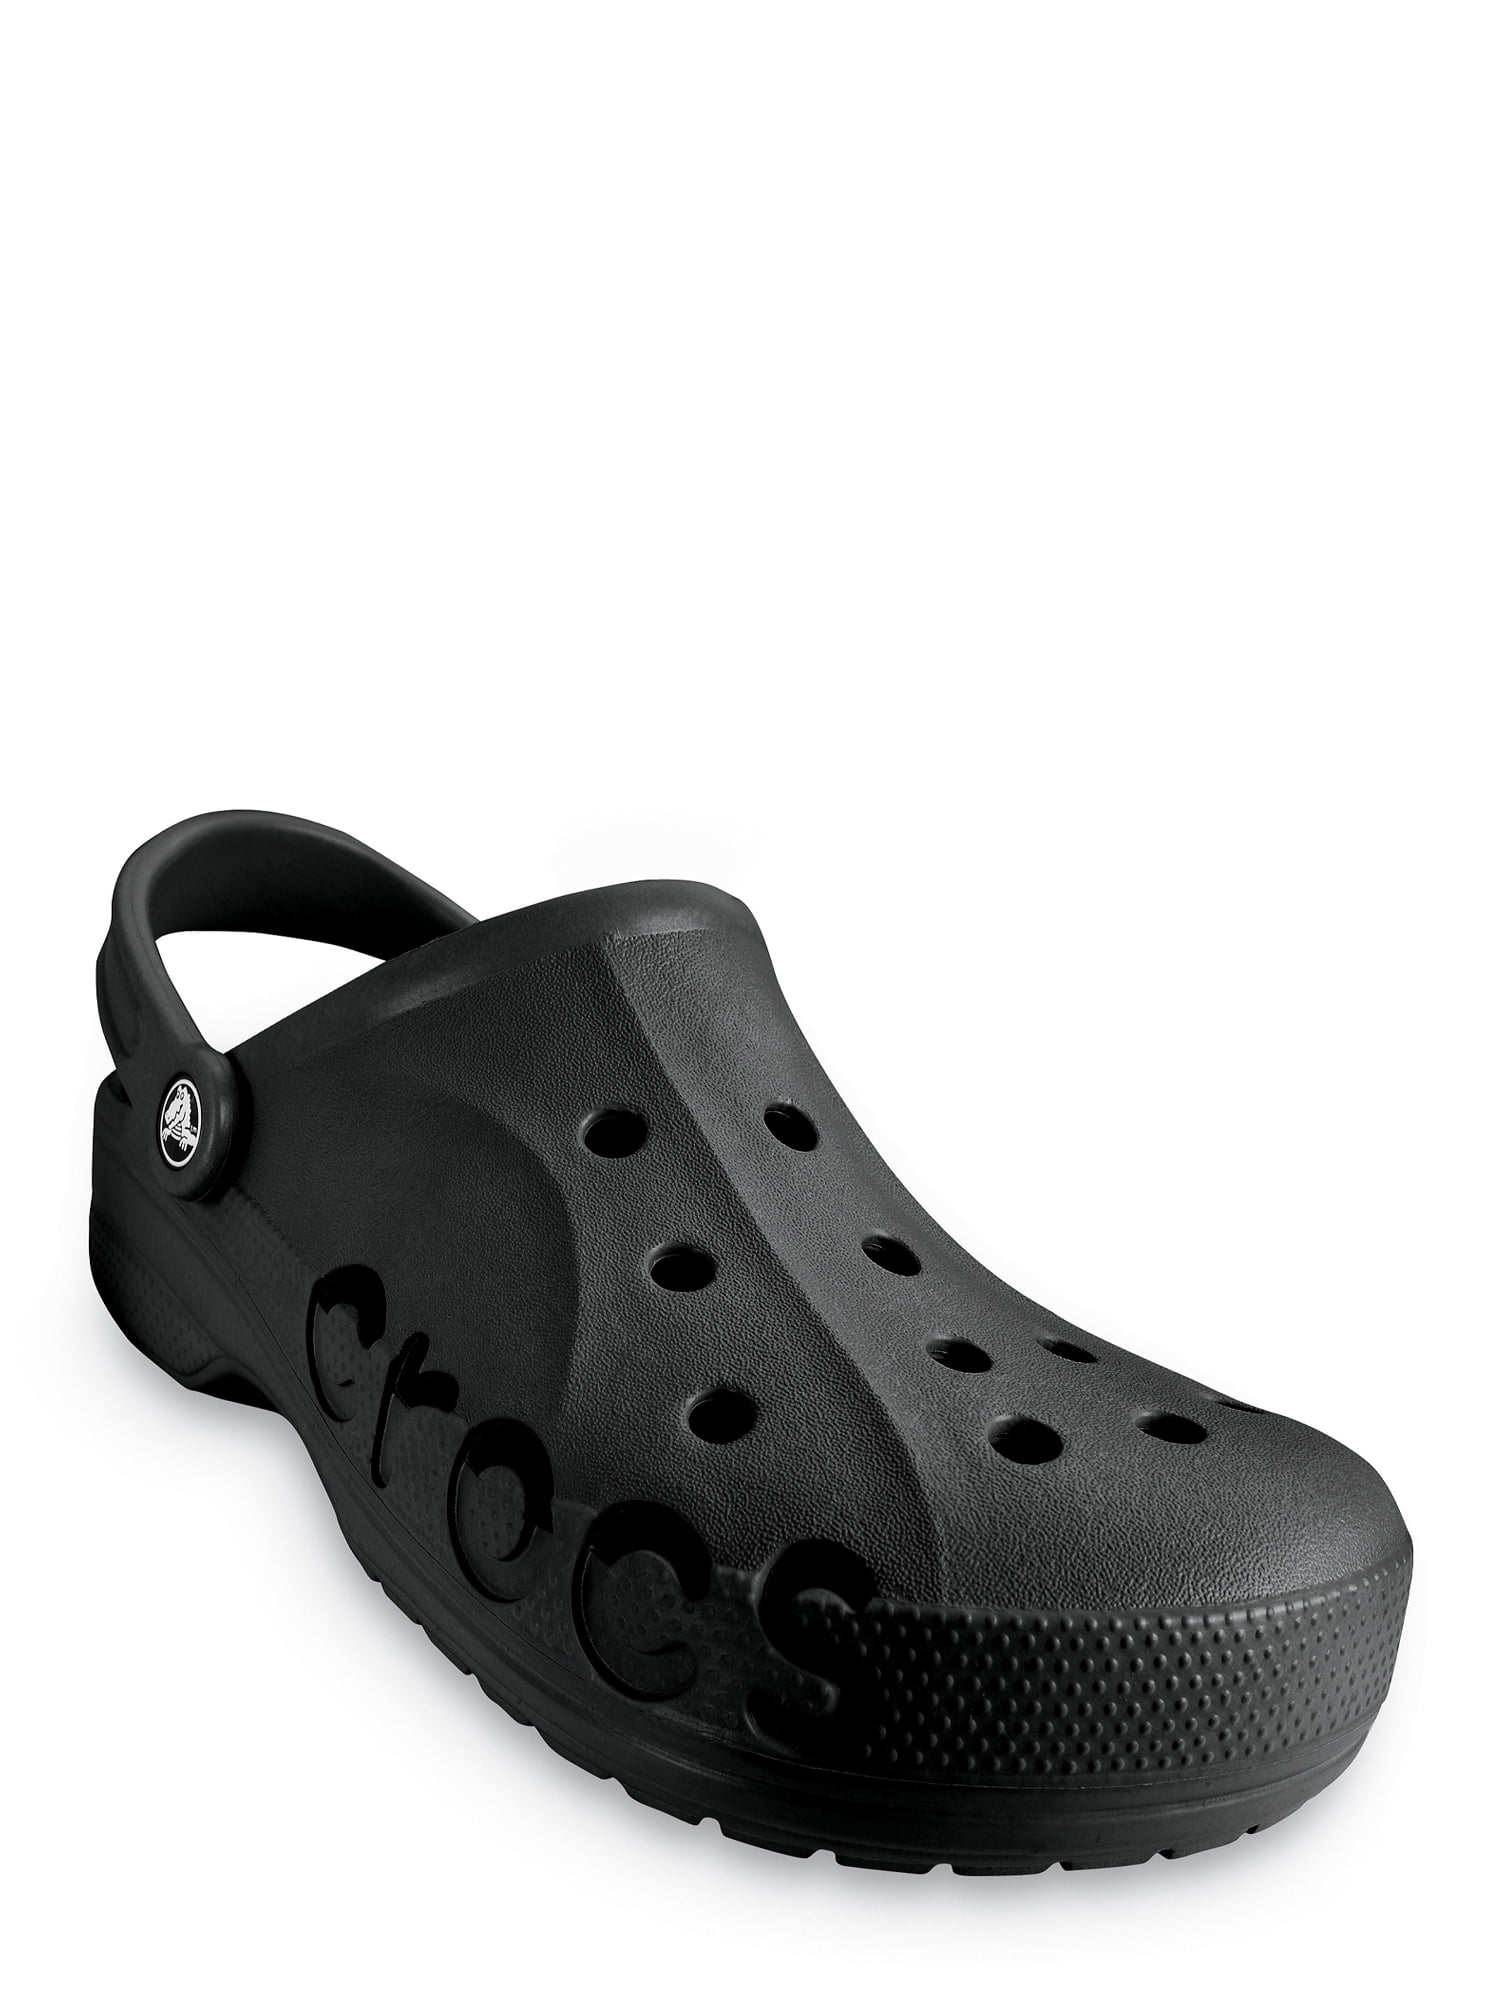 walmart crocs for men